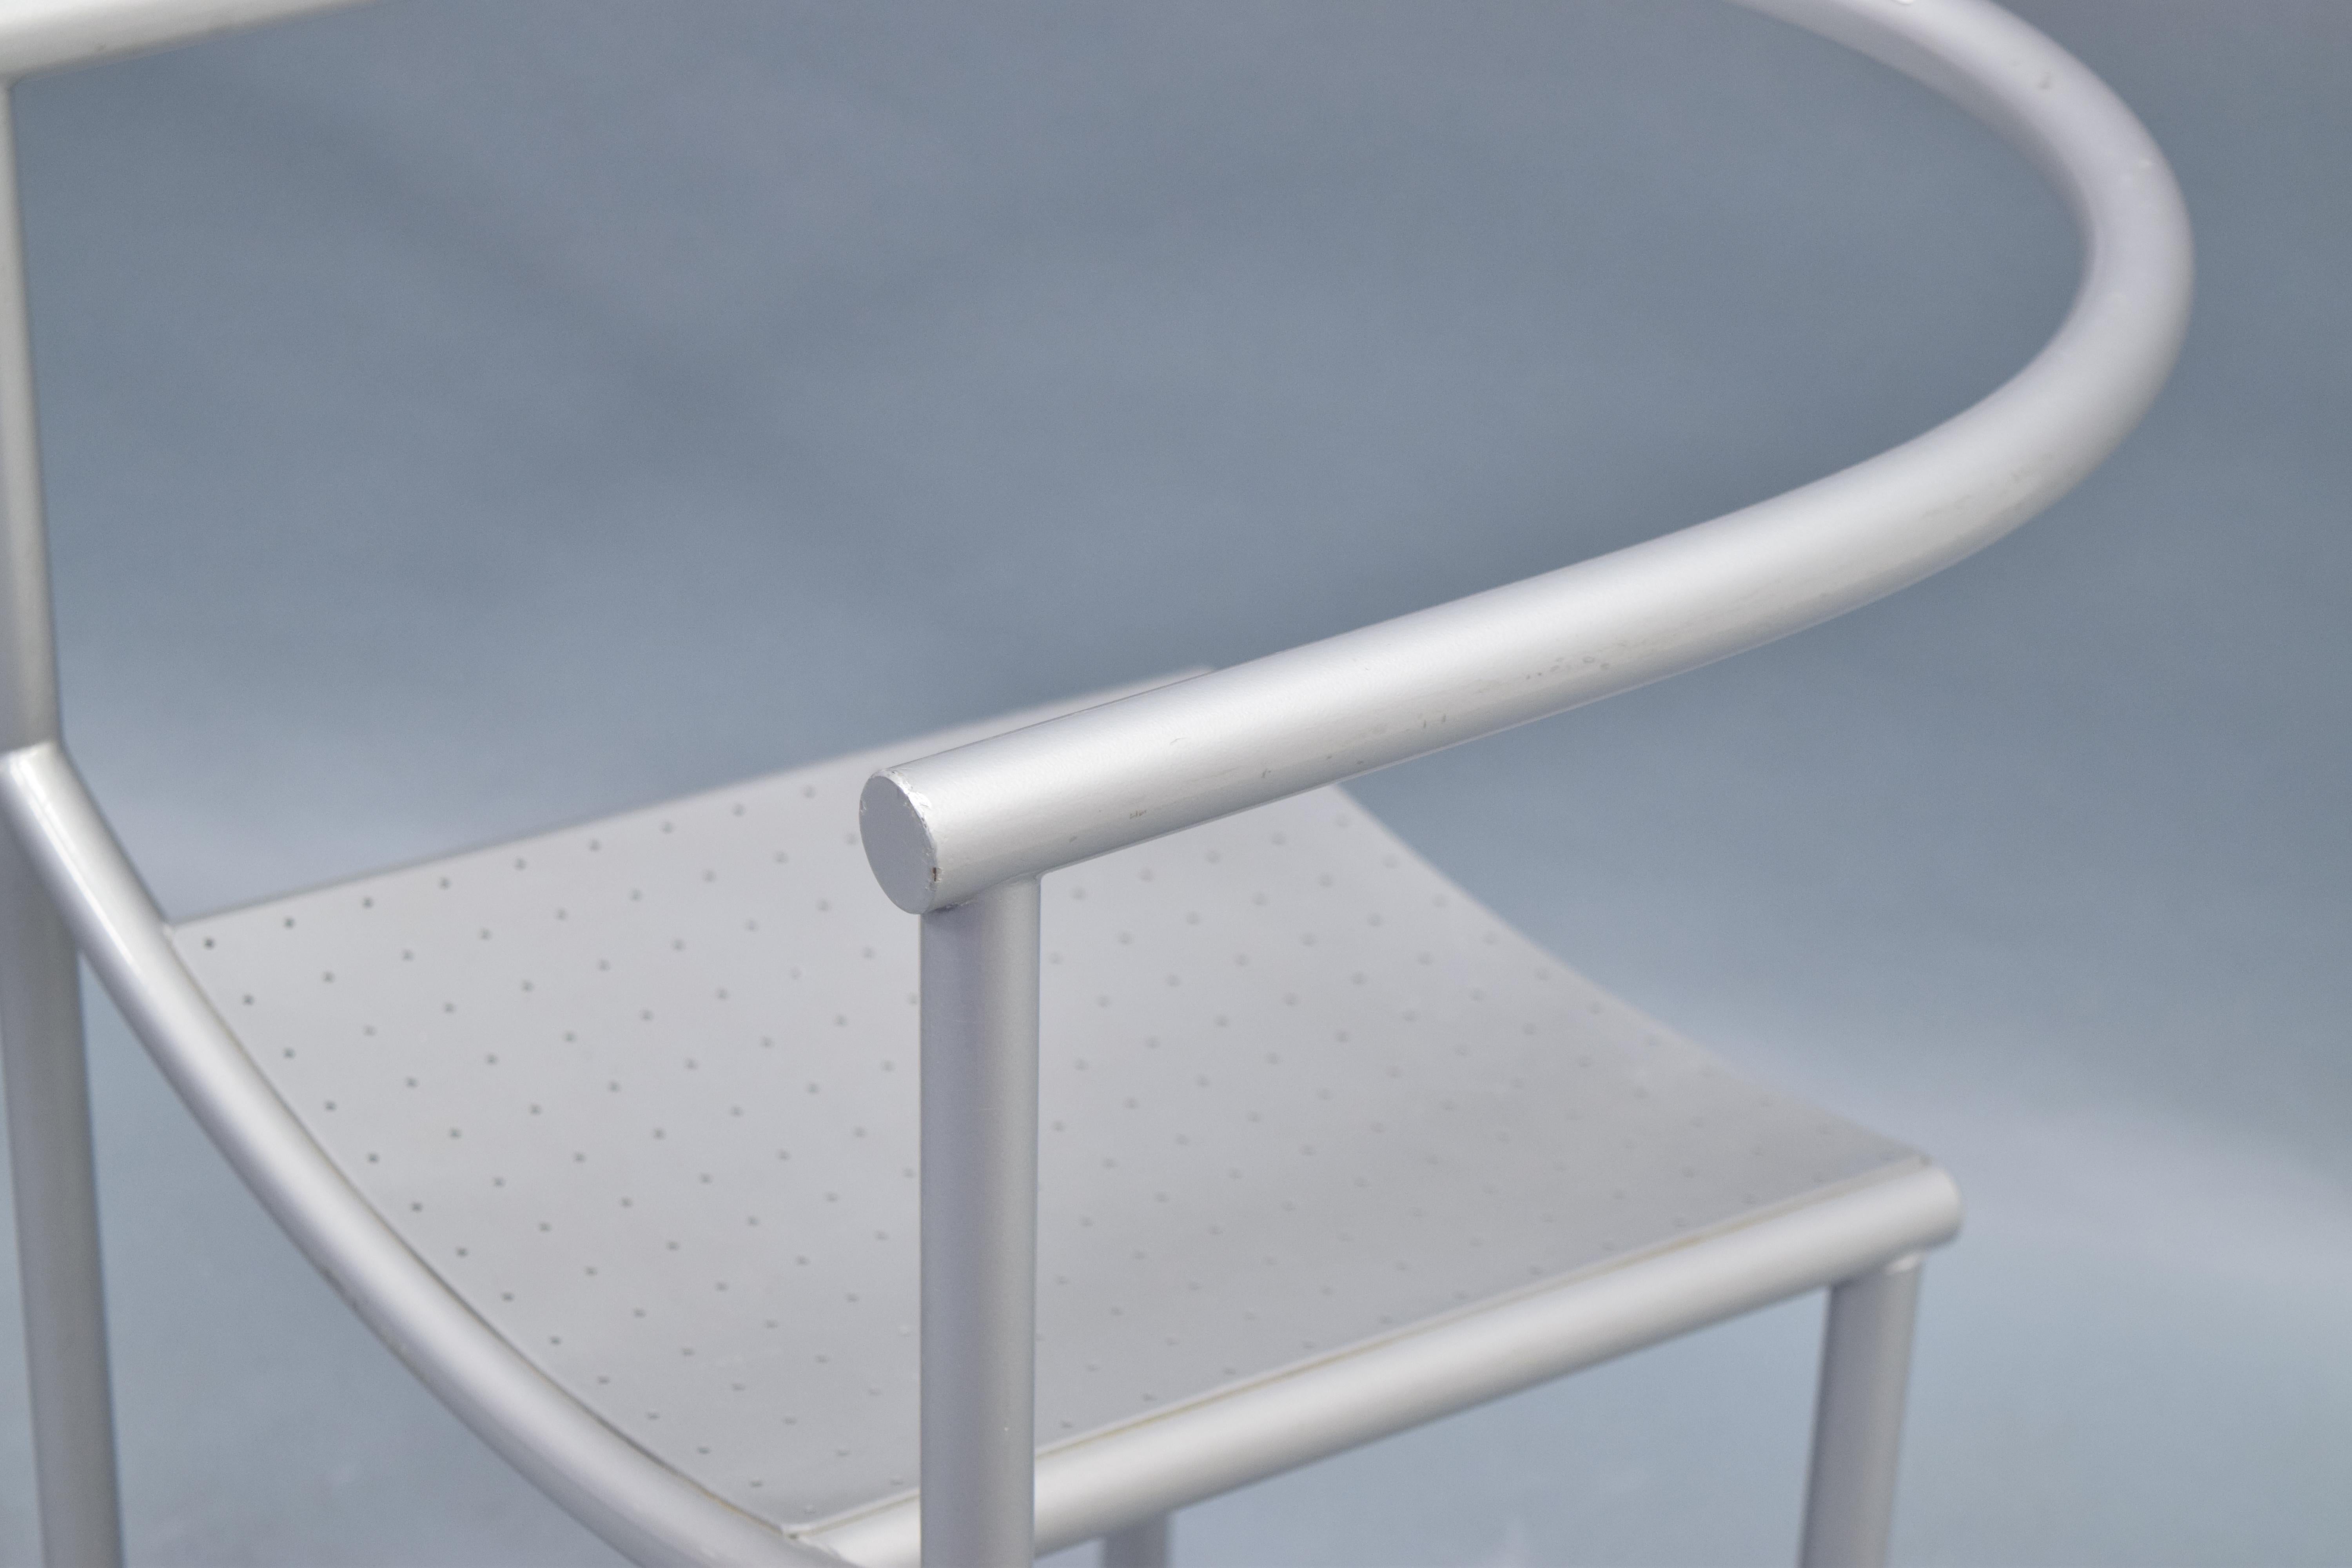 Incroyable paire de chaises Philipe Starck pour Driade 'Von Vogelsang' fabriquées et conçues à l'origine pour le Café Rothschild. Structure/cadre en acier tubulaire, laqué et peint par poudrage d'une couleur gris froid. Dossier et accoudoir ronds